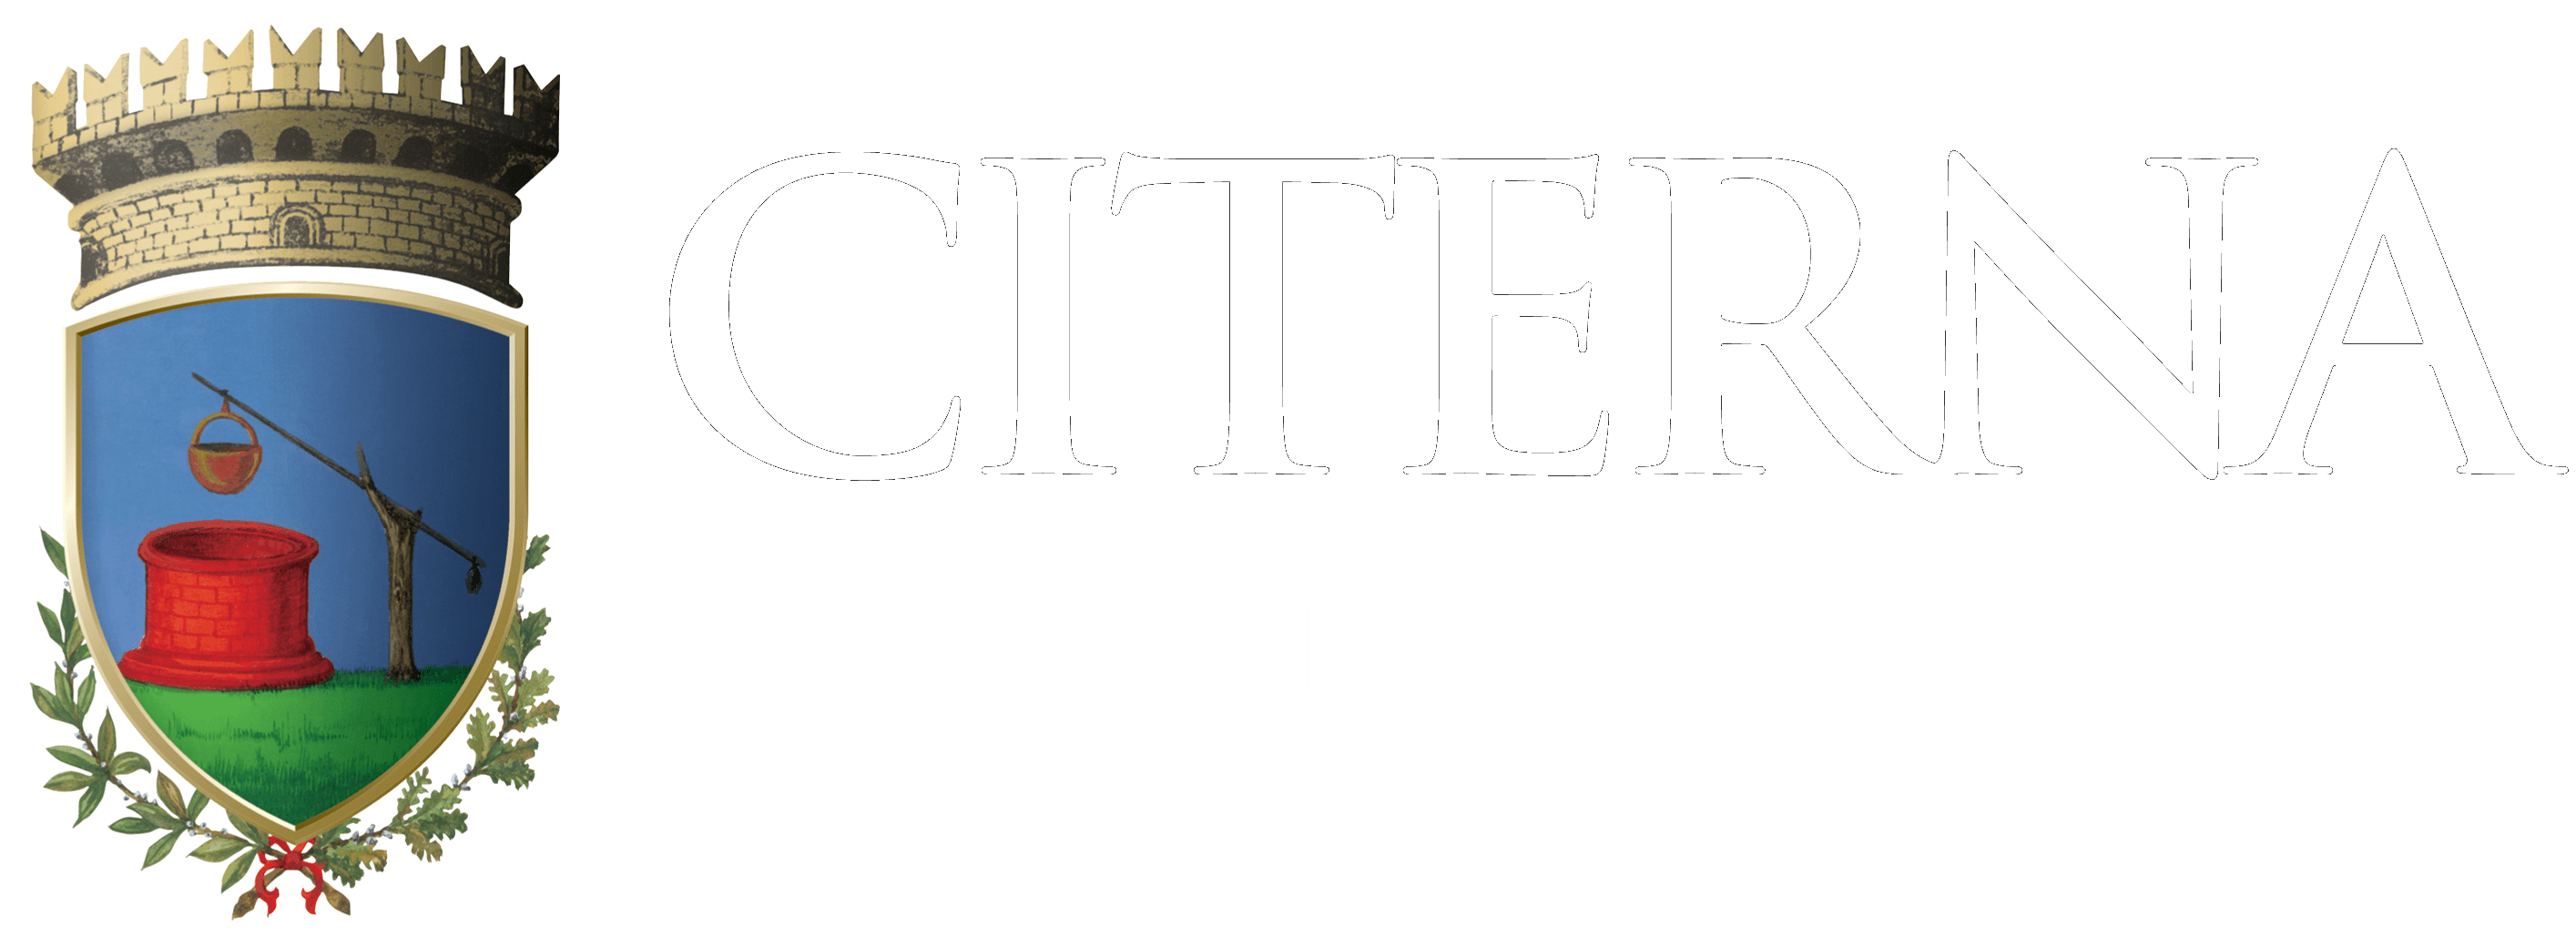 logo_turismo_white